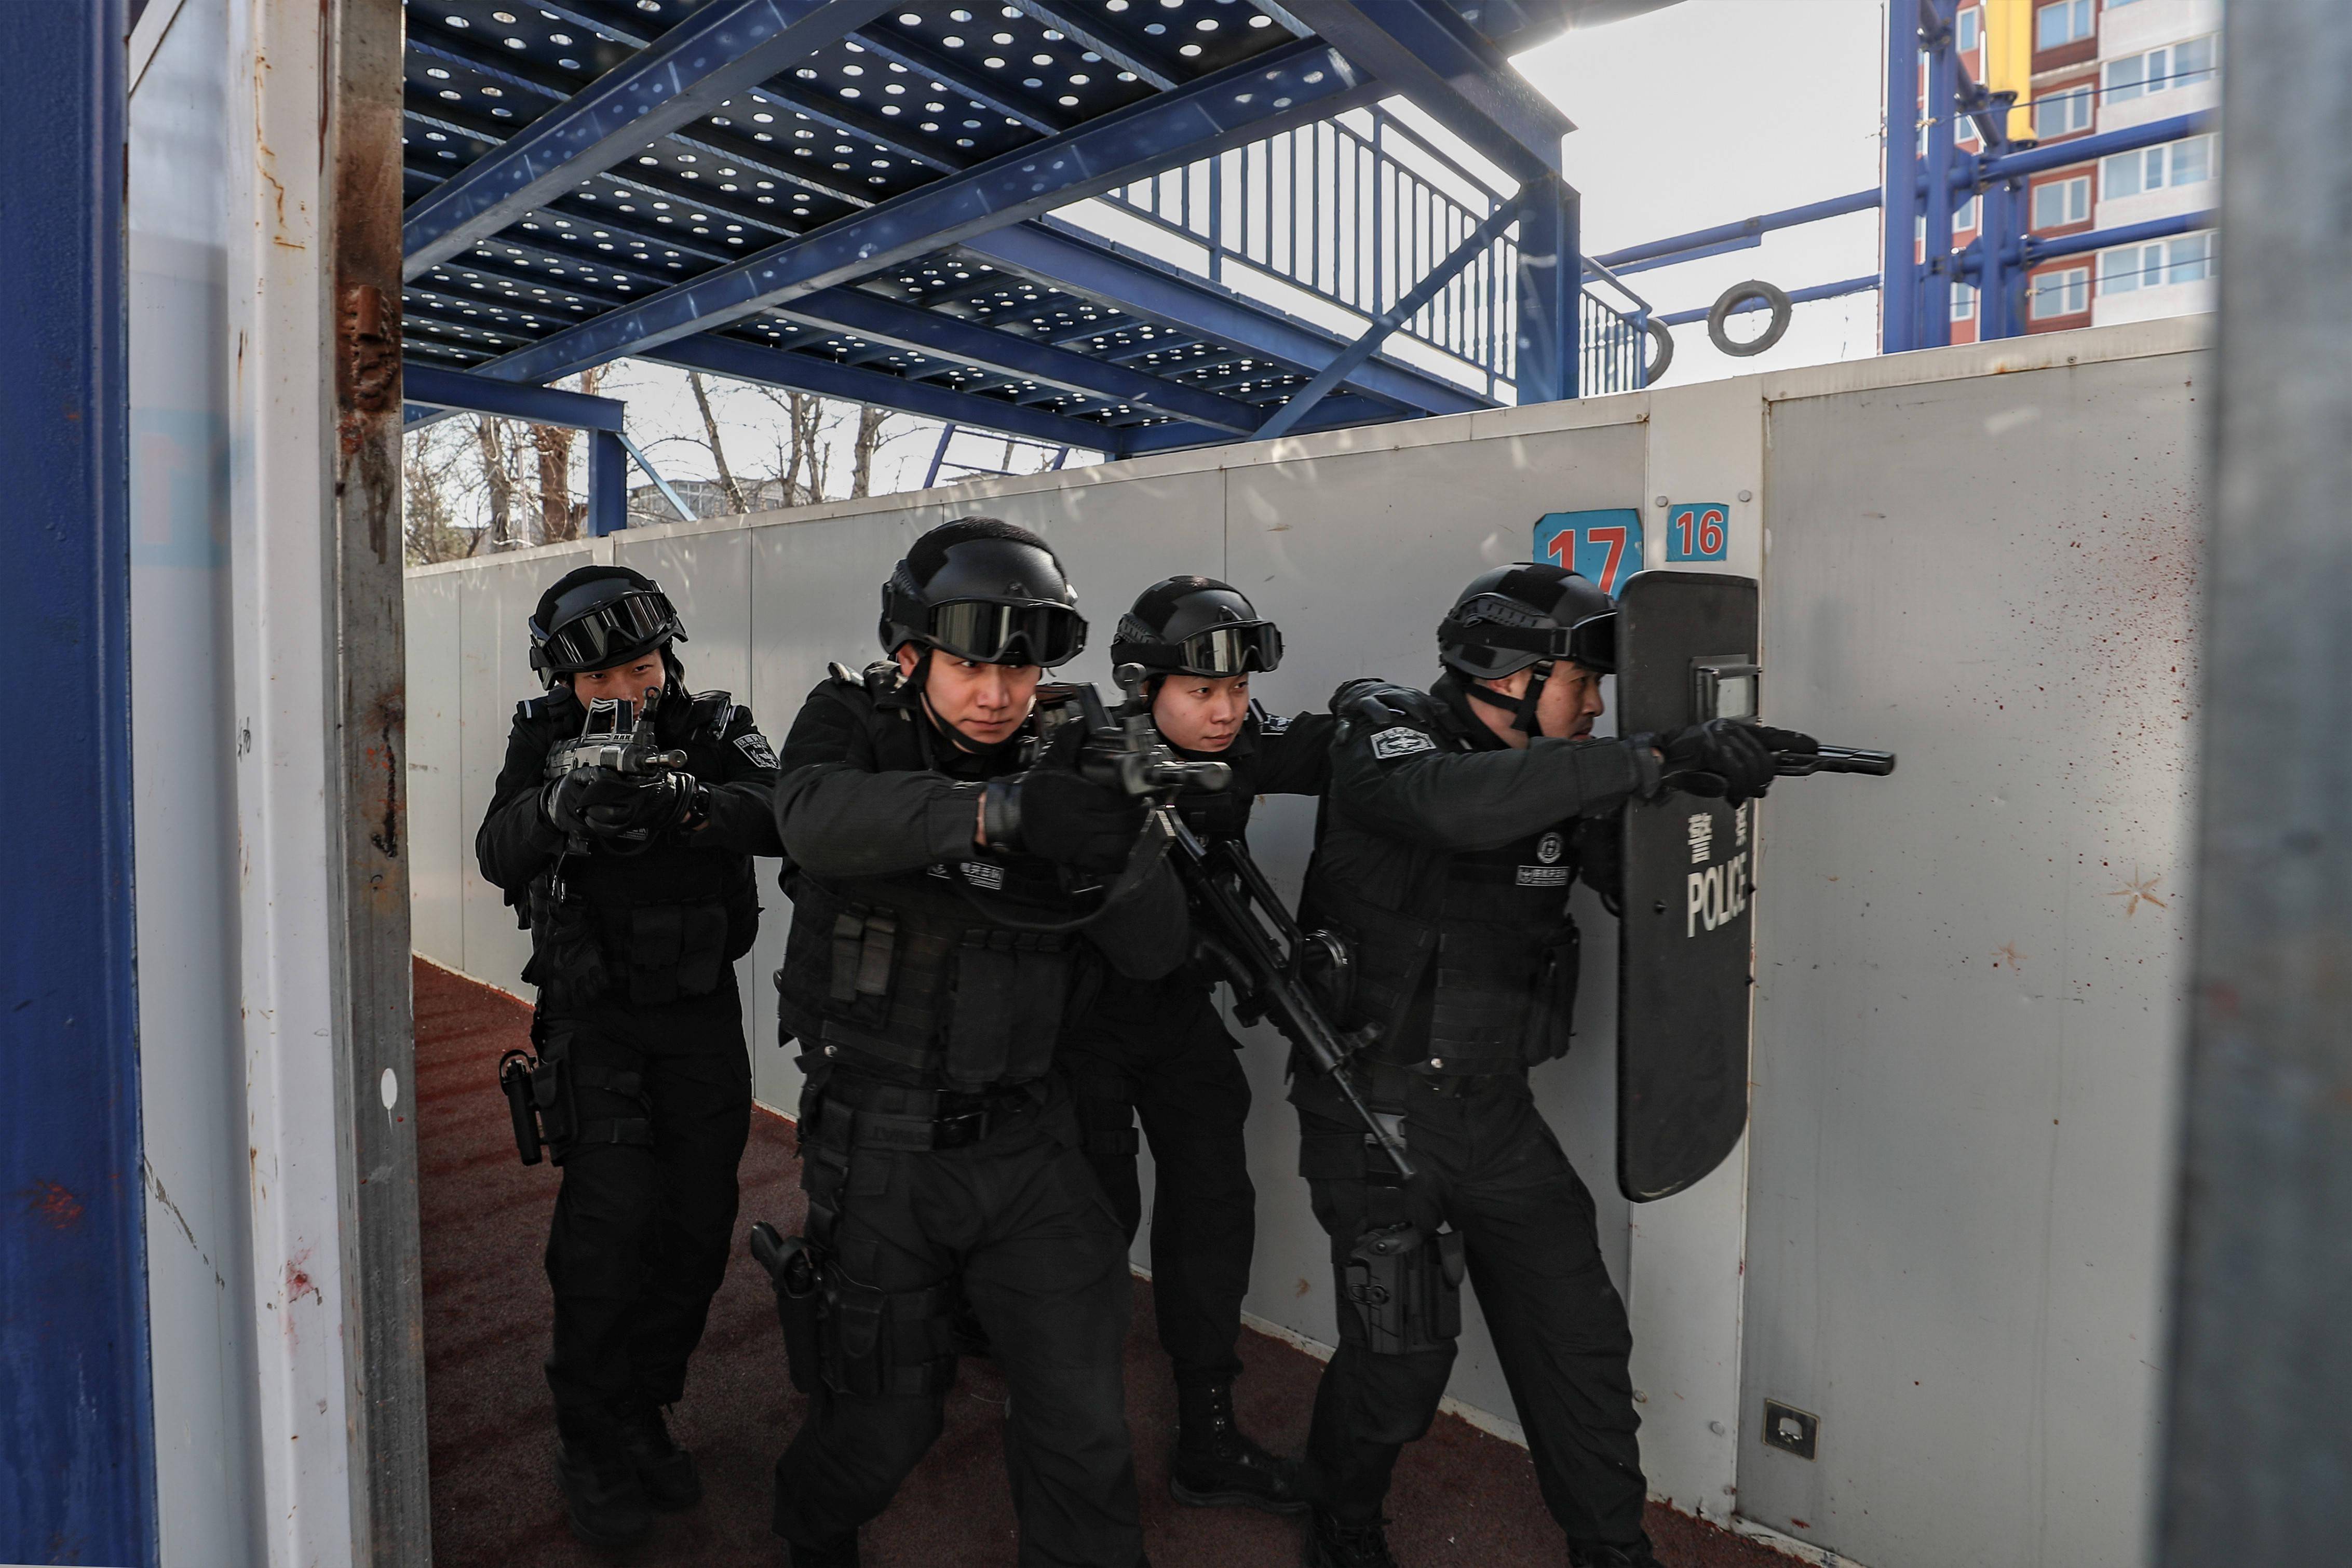 北京特警服装图片